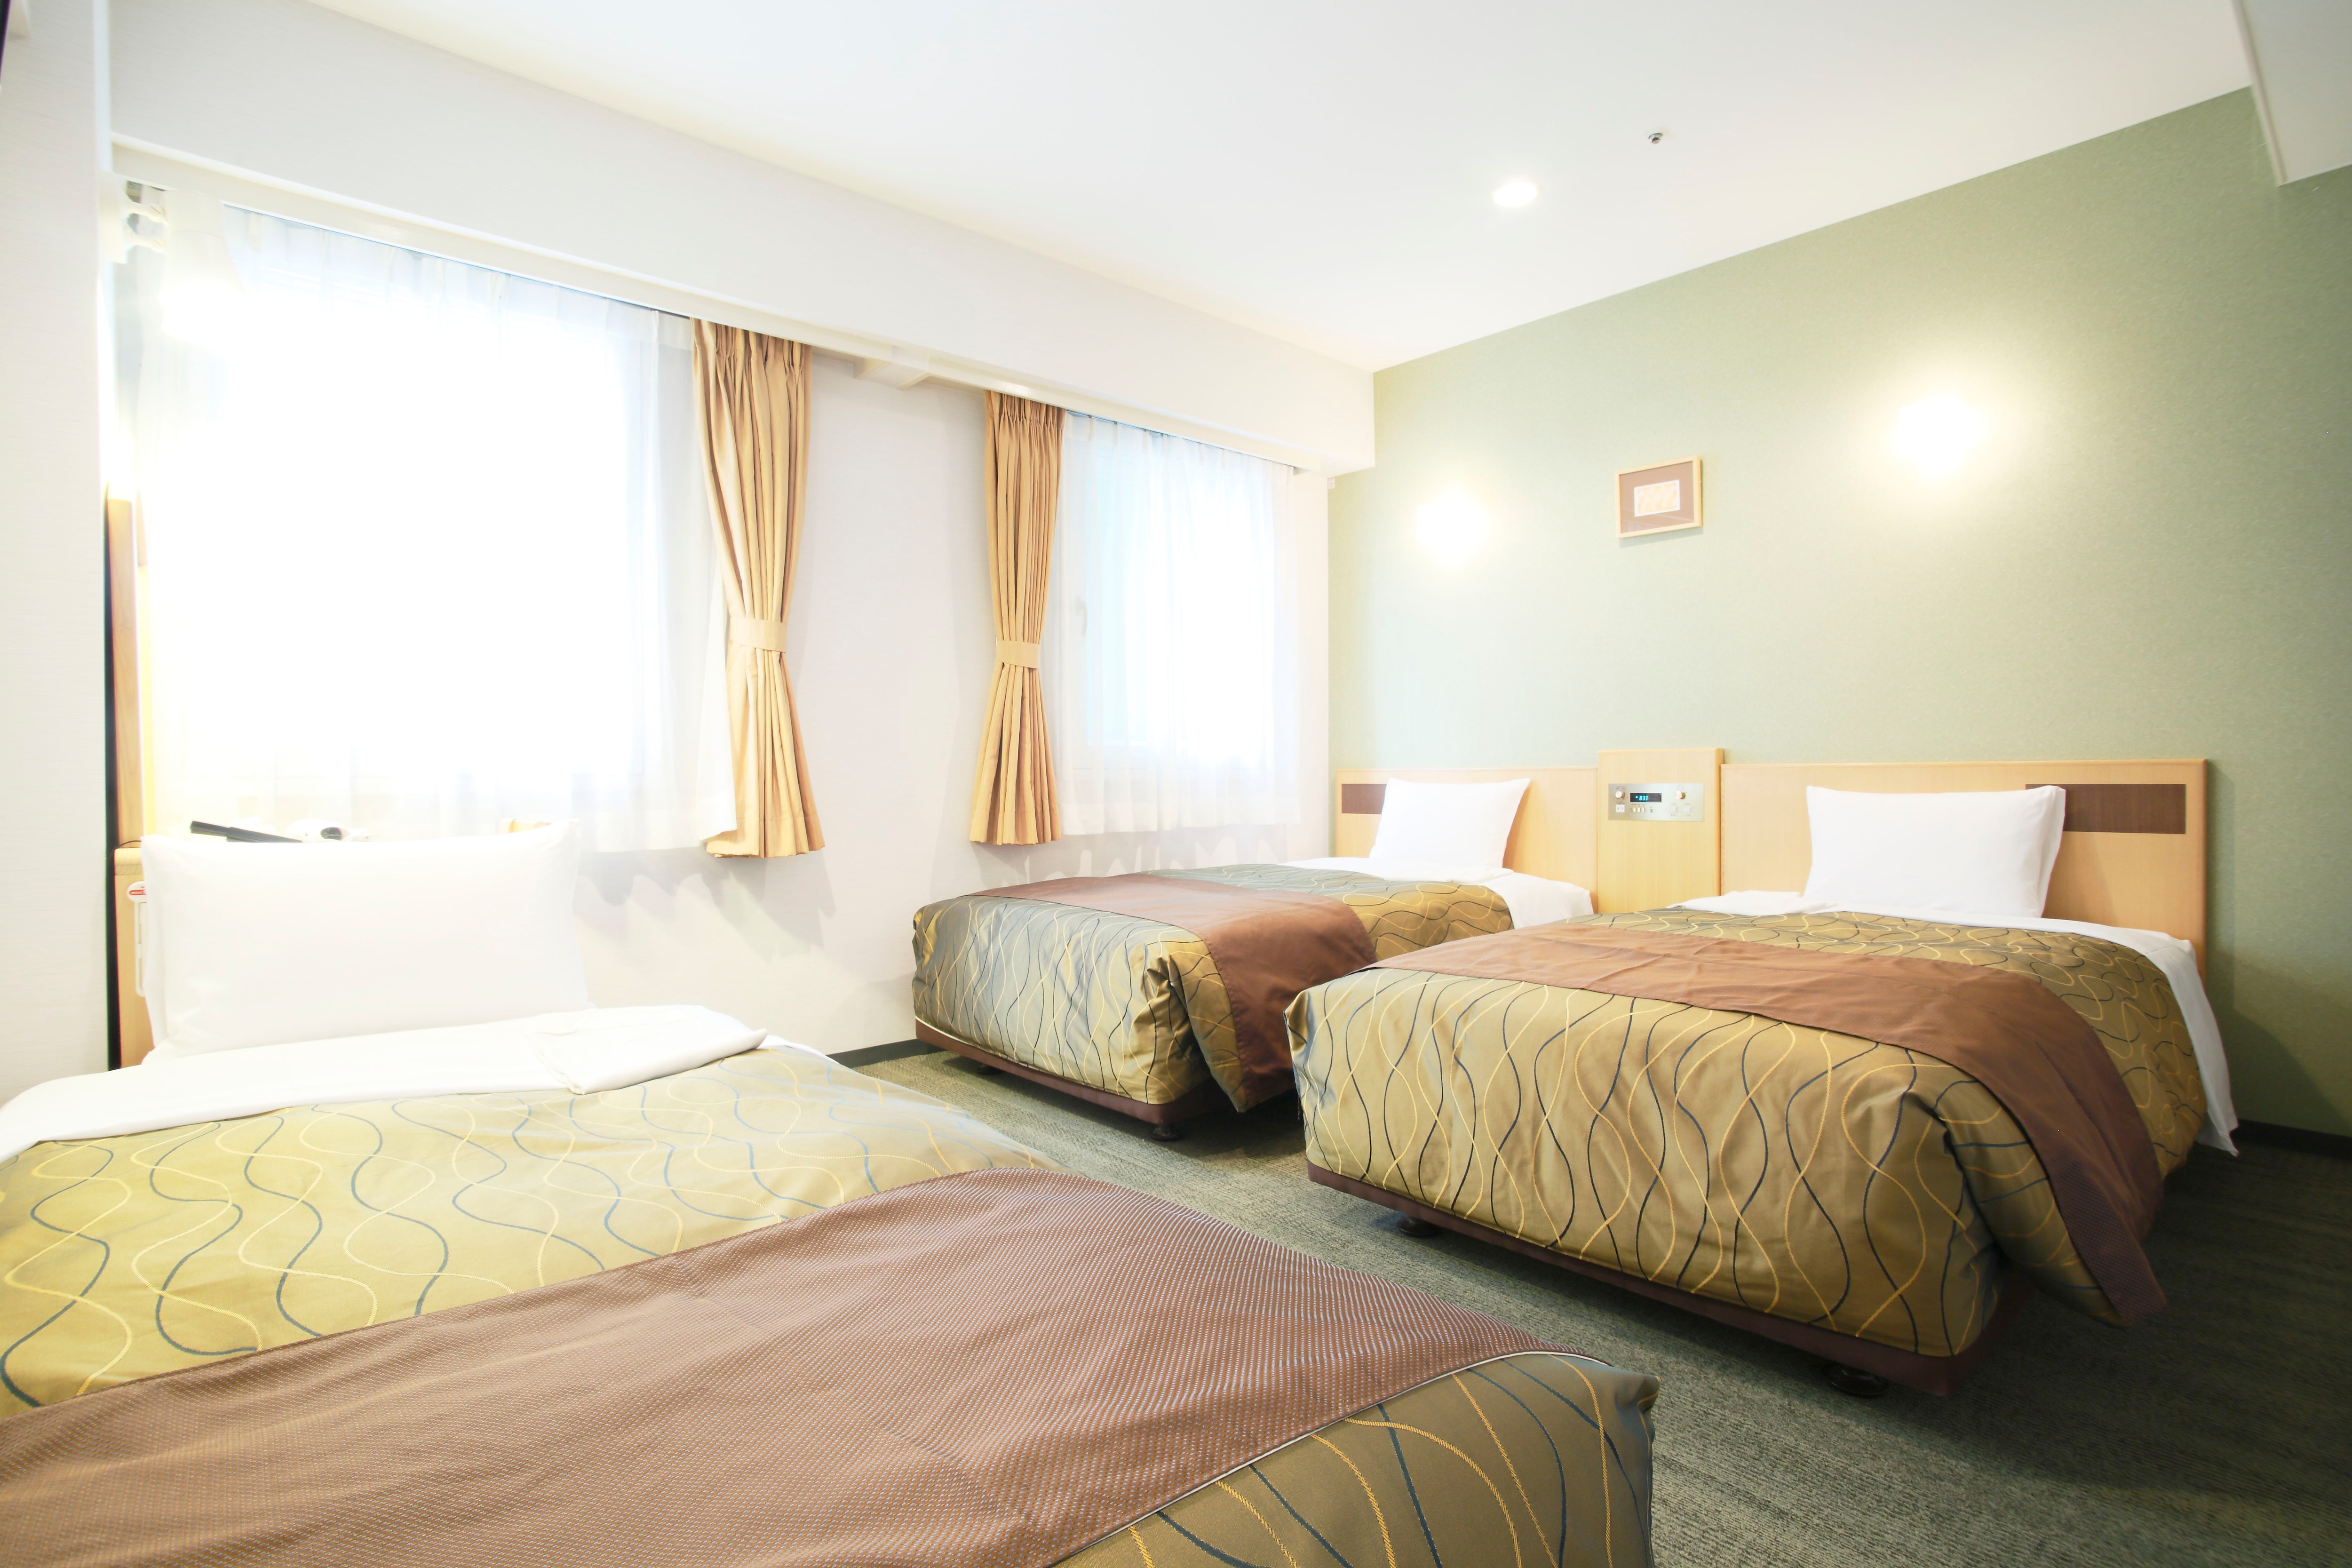 Triple room 21 m² Bed size 110cm×196cm 2 beds 100cm×196cm 1 bed